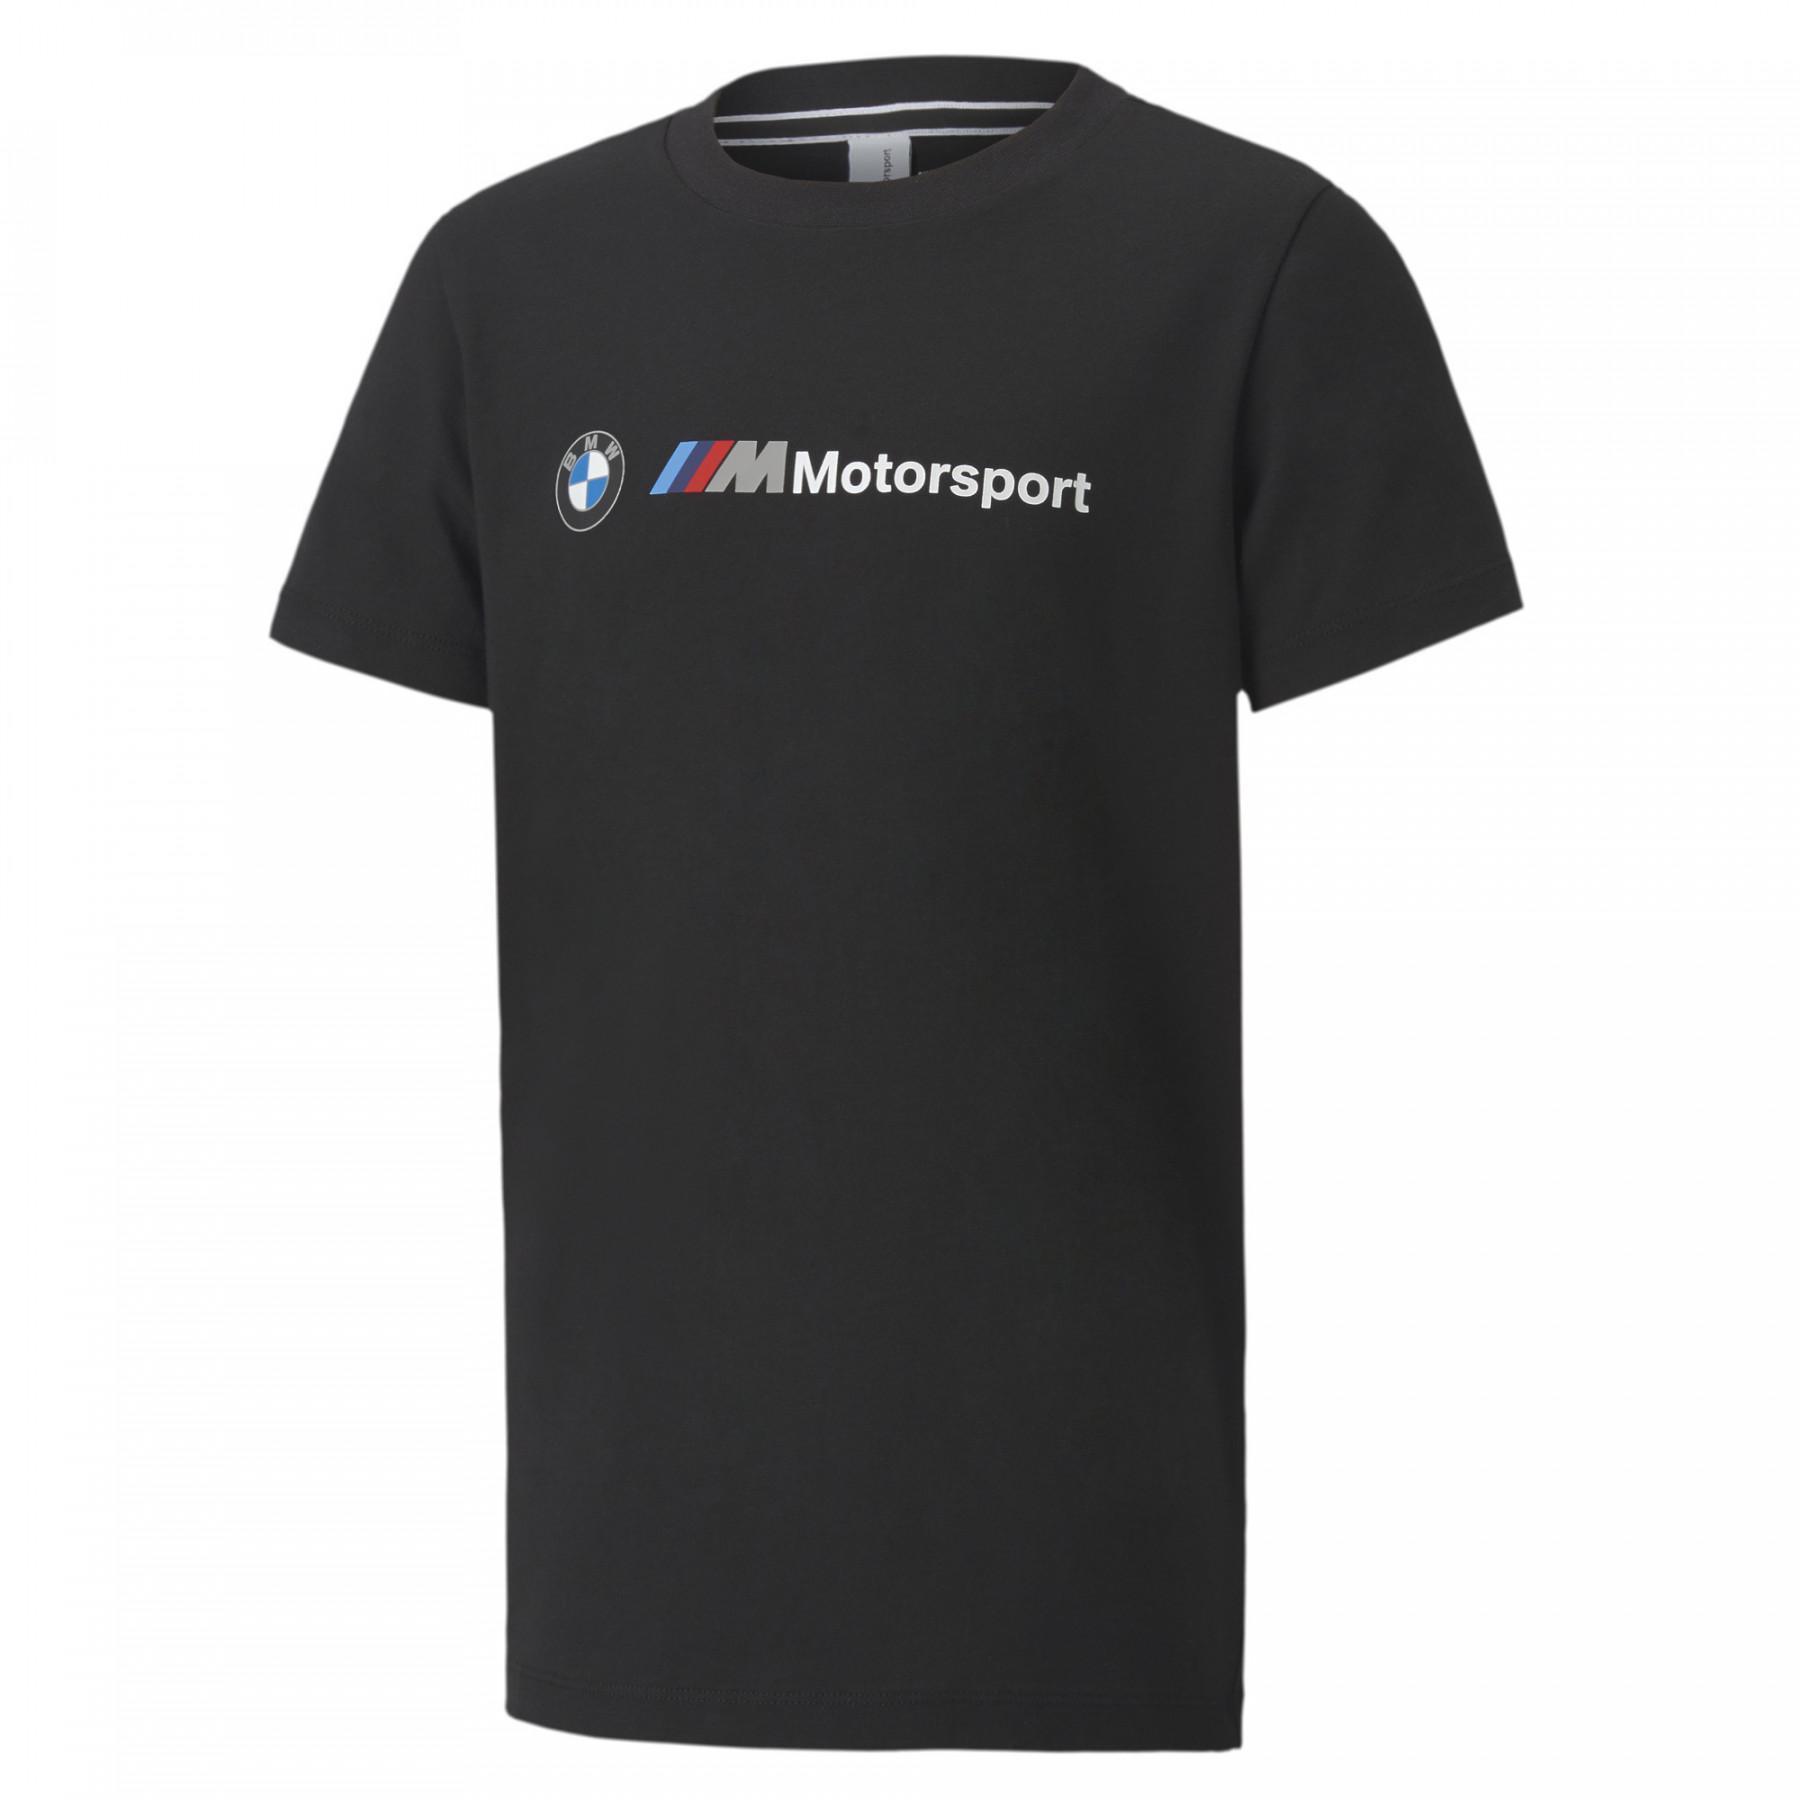 Kinder-T-shirt Bmw Motorsport Logo